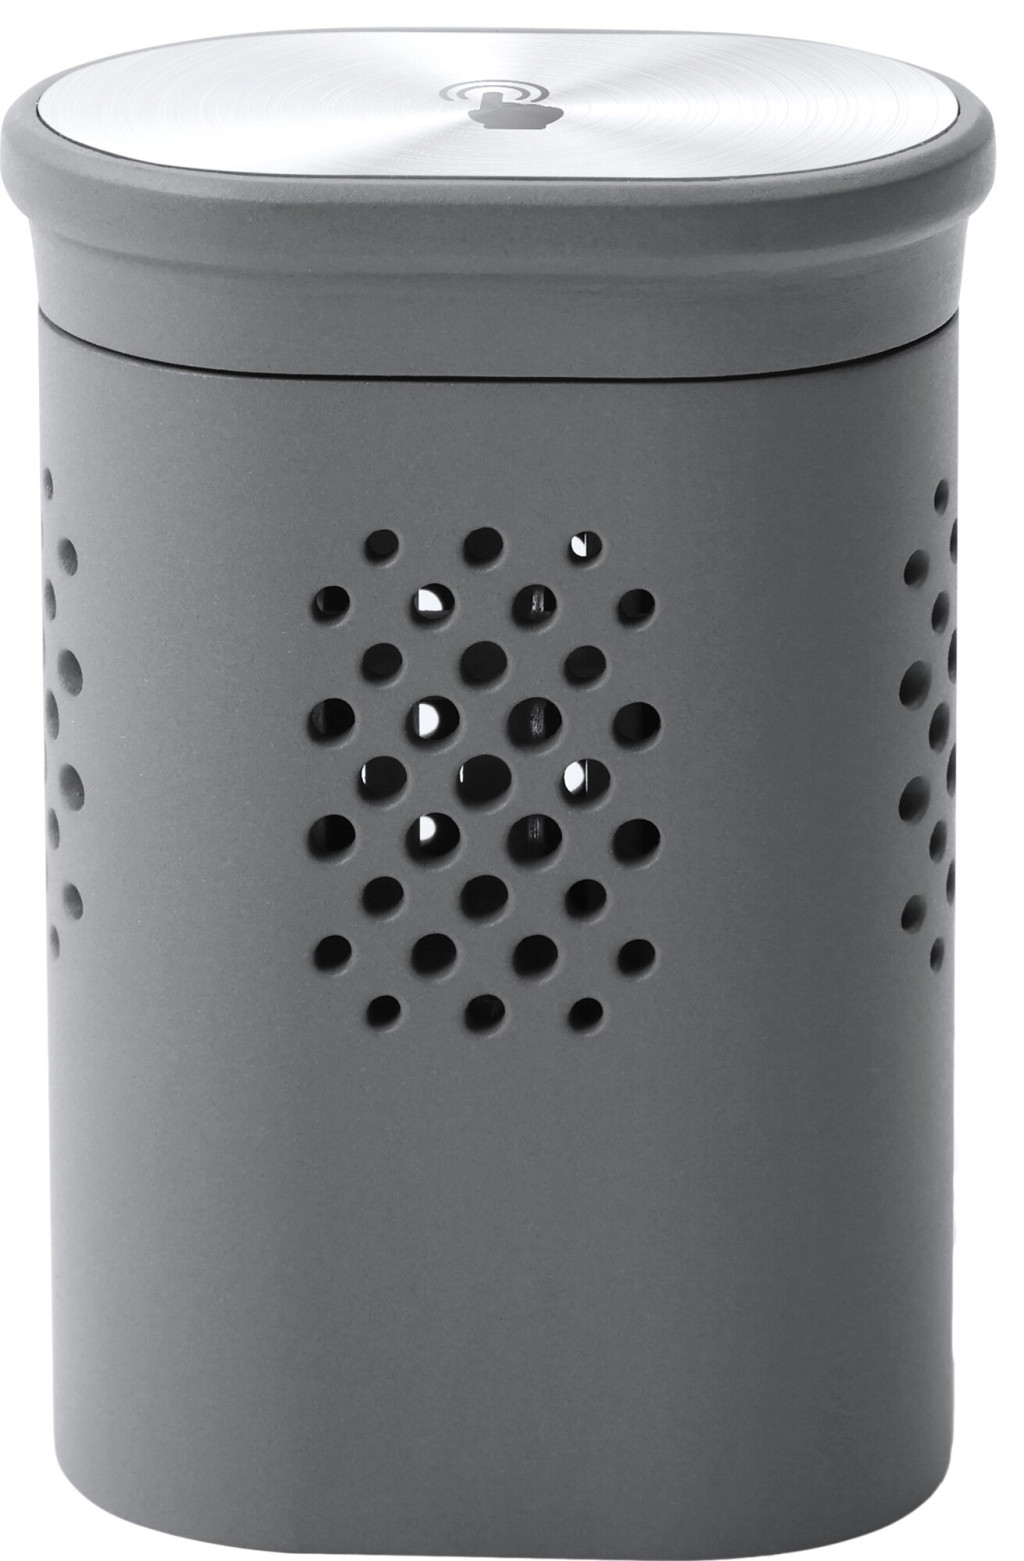 Air Freshener Capsule | KJ-DZ01-0004 | for Air Freshener (Wild Bluebell) for AIRBOT Z1